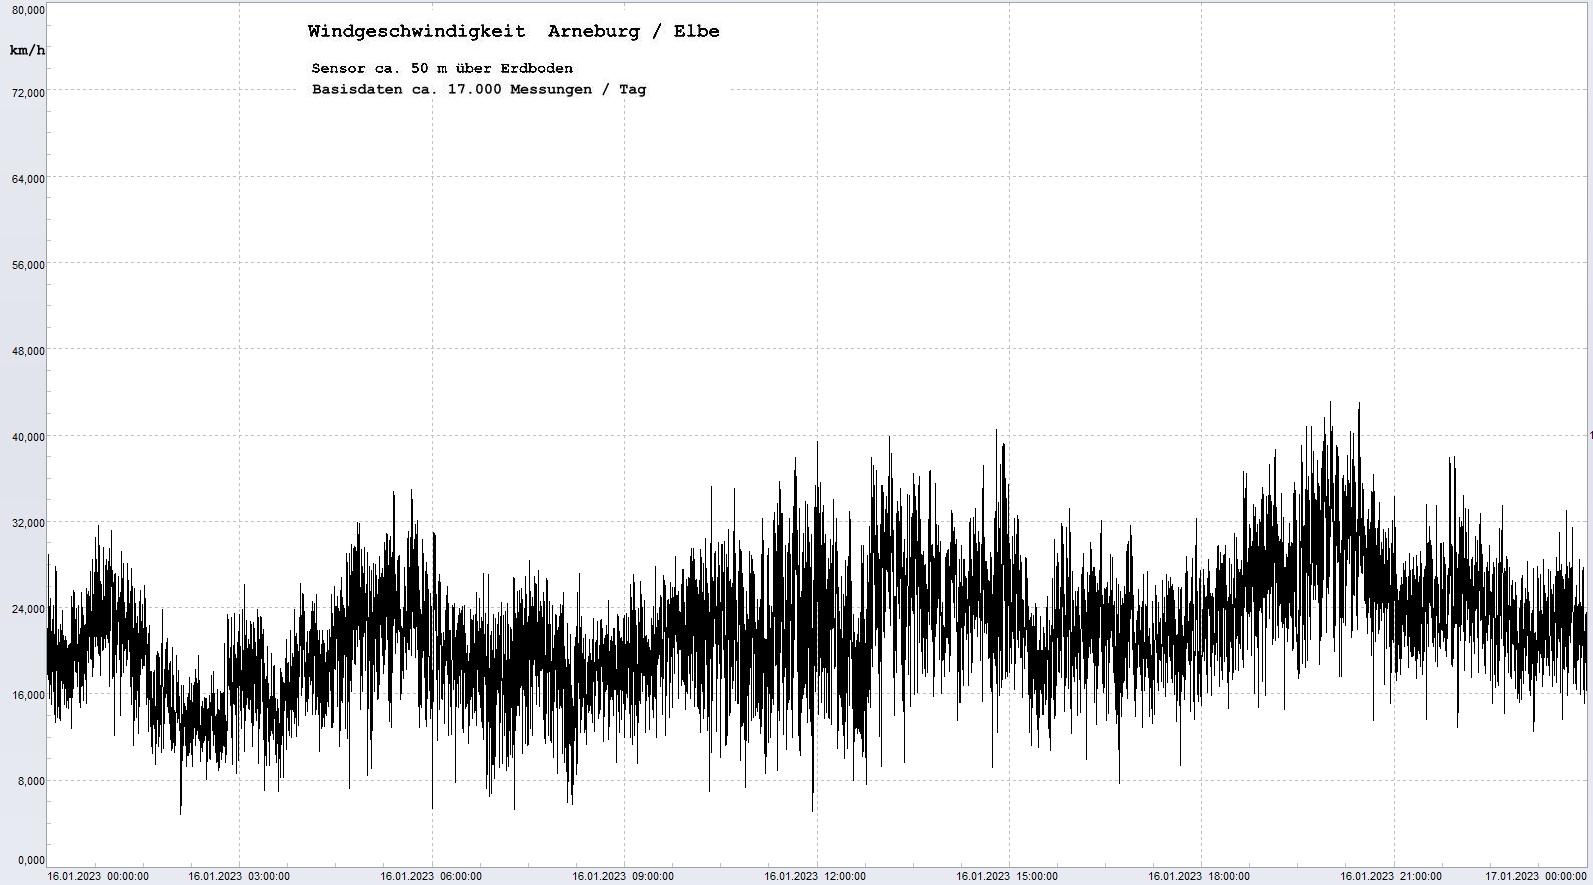 Arneburg Tages-Diagramm Winddaten, 16.01.2023
  Diaramm, Sensor auf Gebude, ca. 50 m ber Erdboden, Basis: 5s-Aufzeichnung